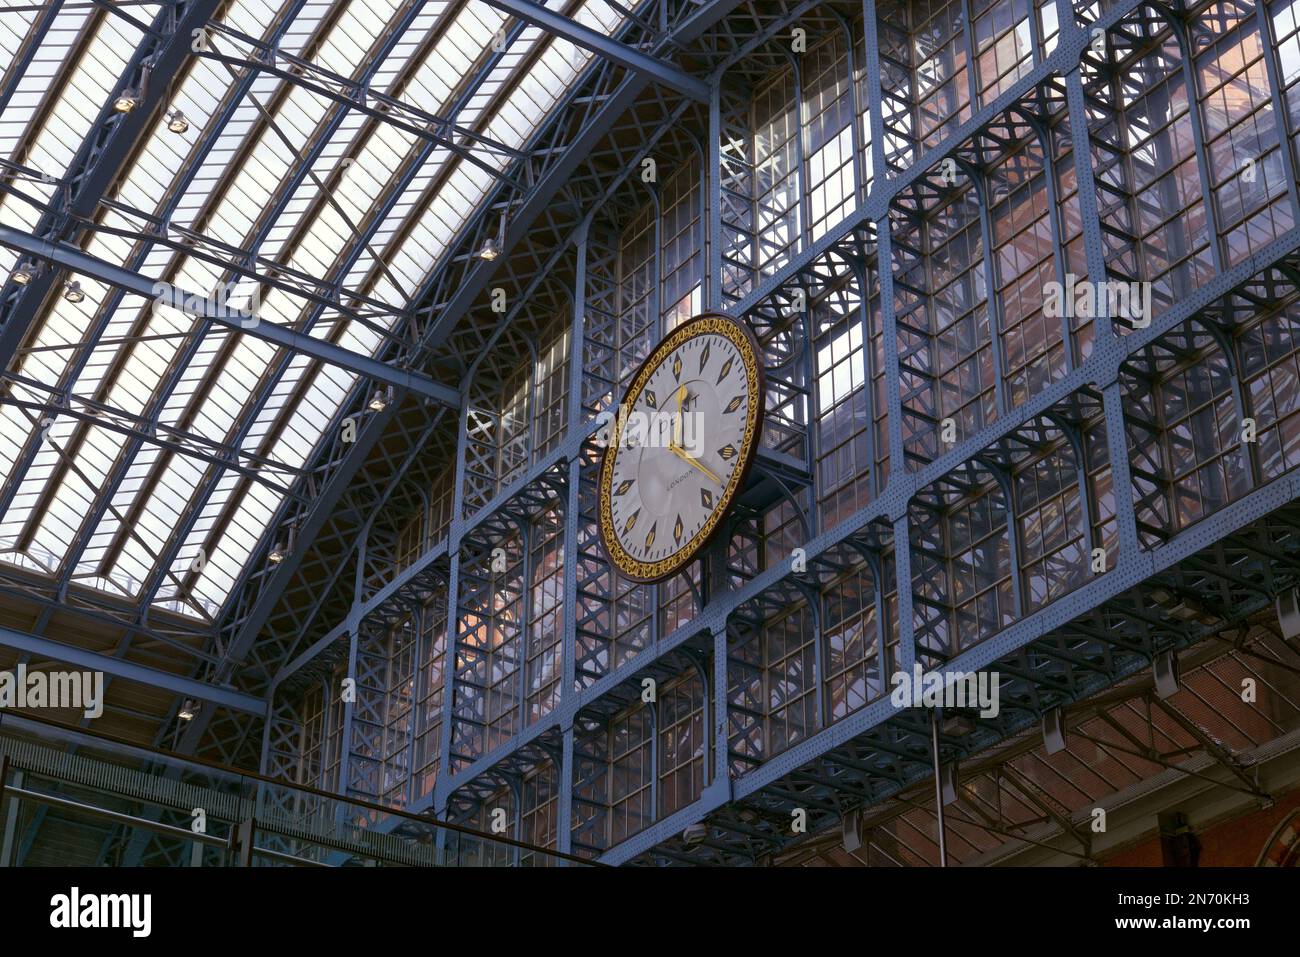 Gare internationale de St Pancras, Londres, Angleterre, Royaume-Uni - toit en fer et verre et horloge plate-forme Banque D'Images